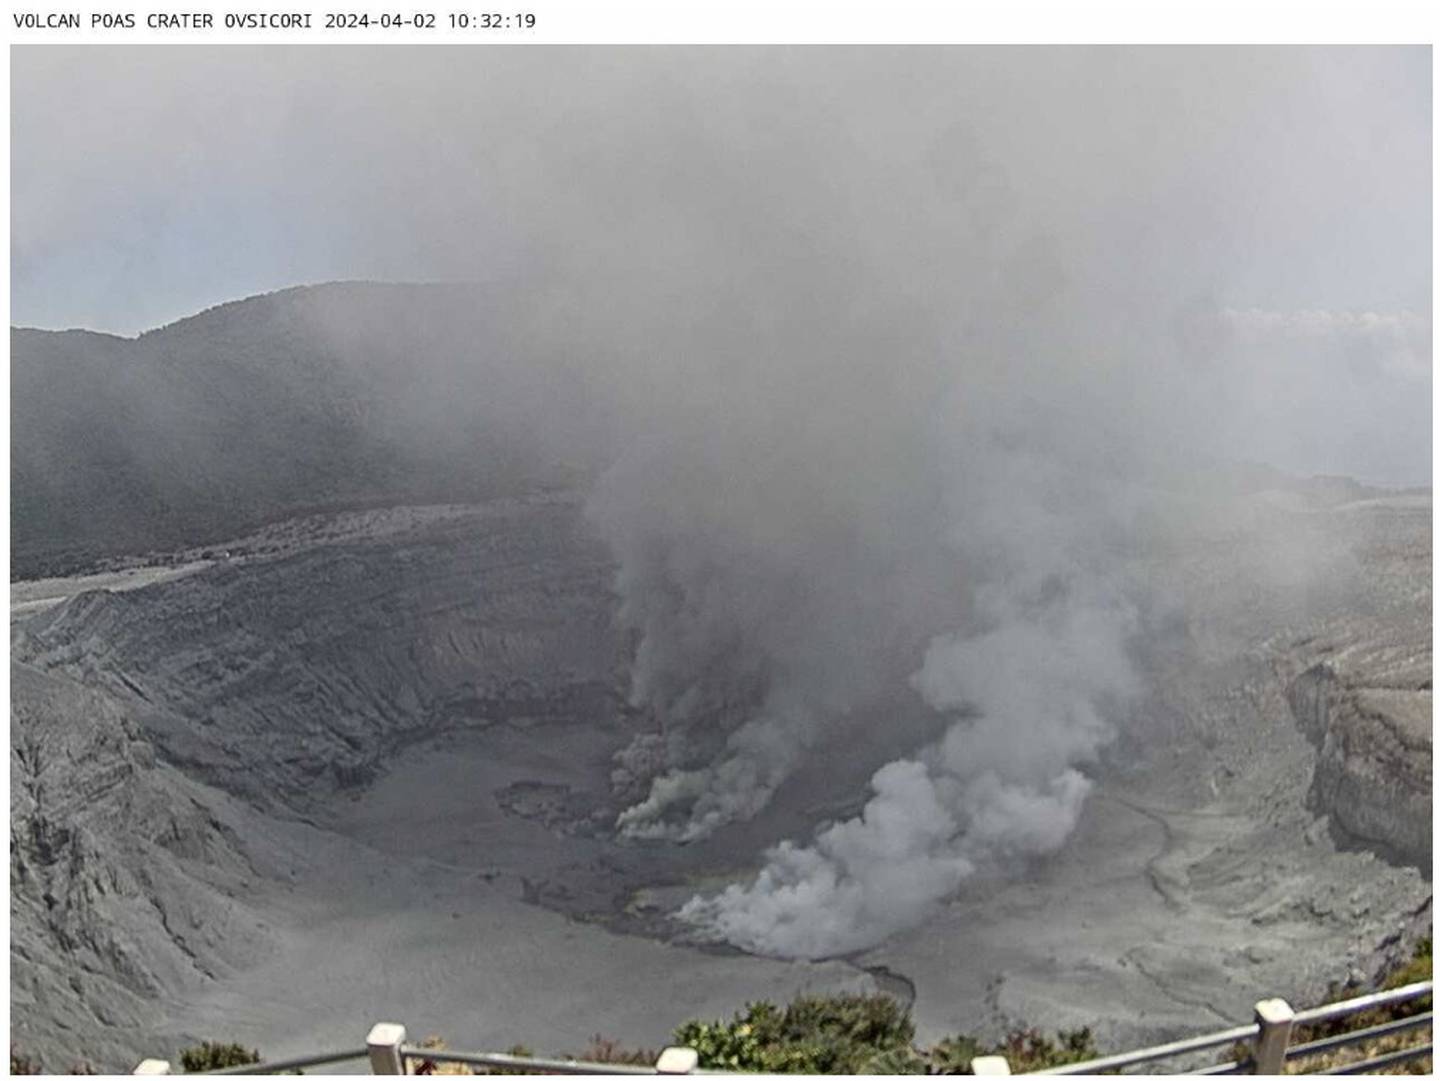 Imagen de este 2 de abril de los gases que obligaron al cierre de la visitación en el Parque Nacional Volcán Poás. Fotografía: Ovsicori.